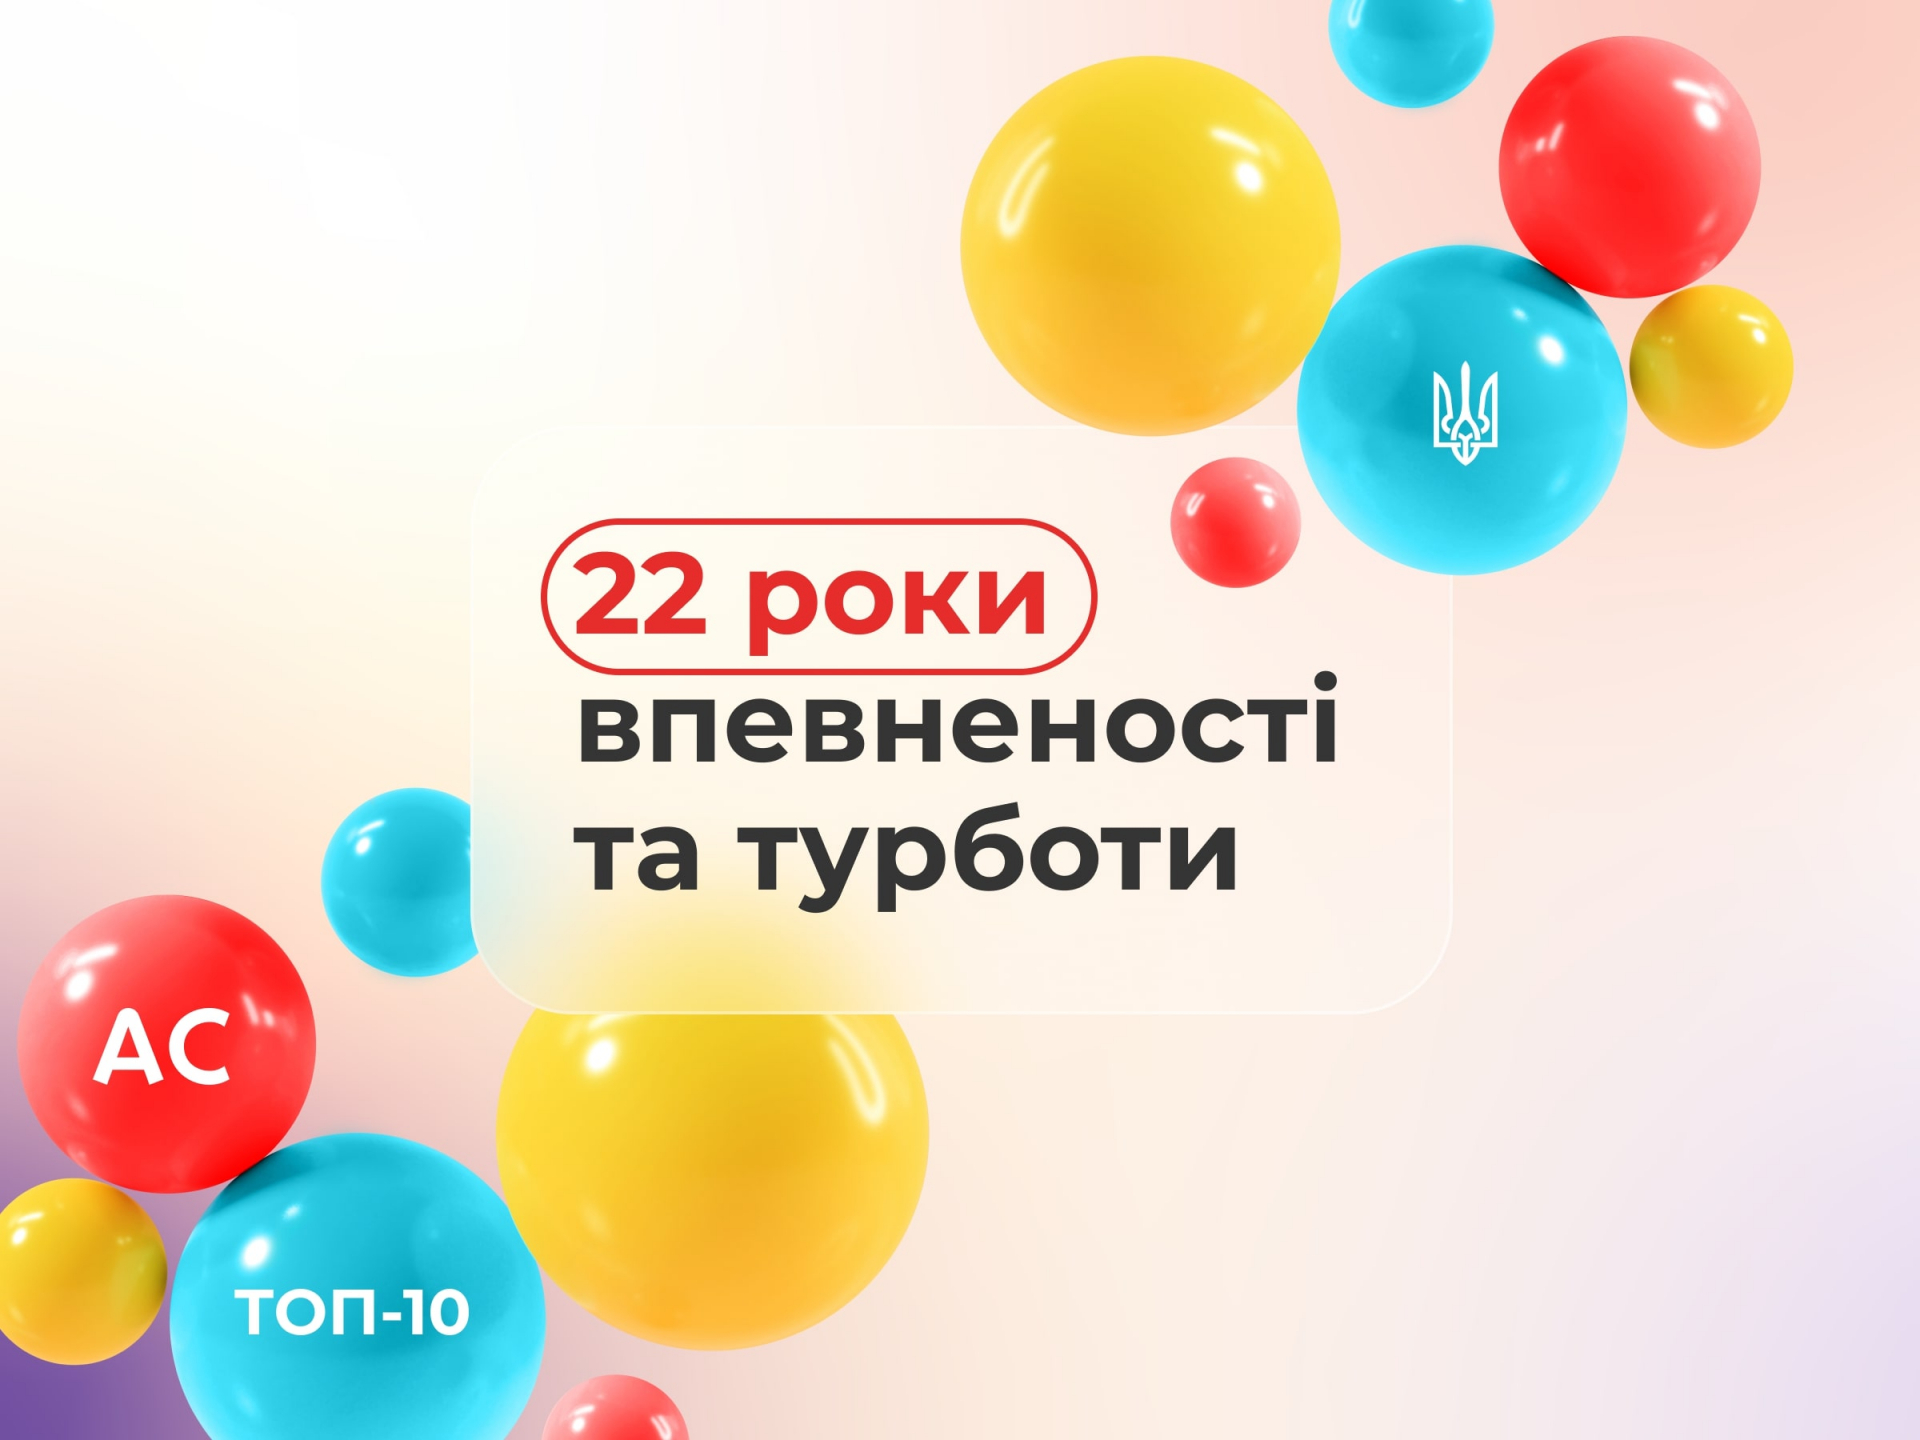 7 червня Альфа Страхування відзначає свій 22 рік плідної праці на страховому ринку України.